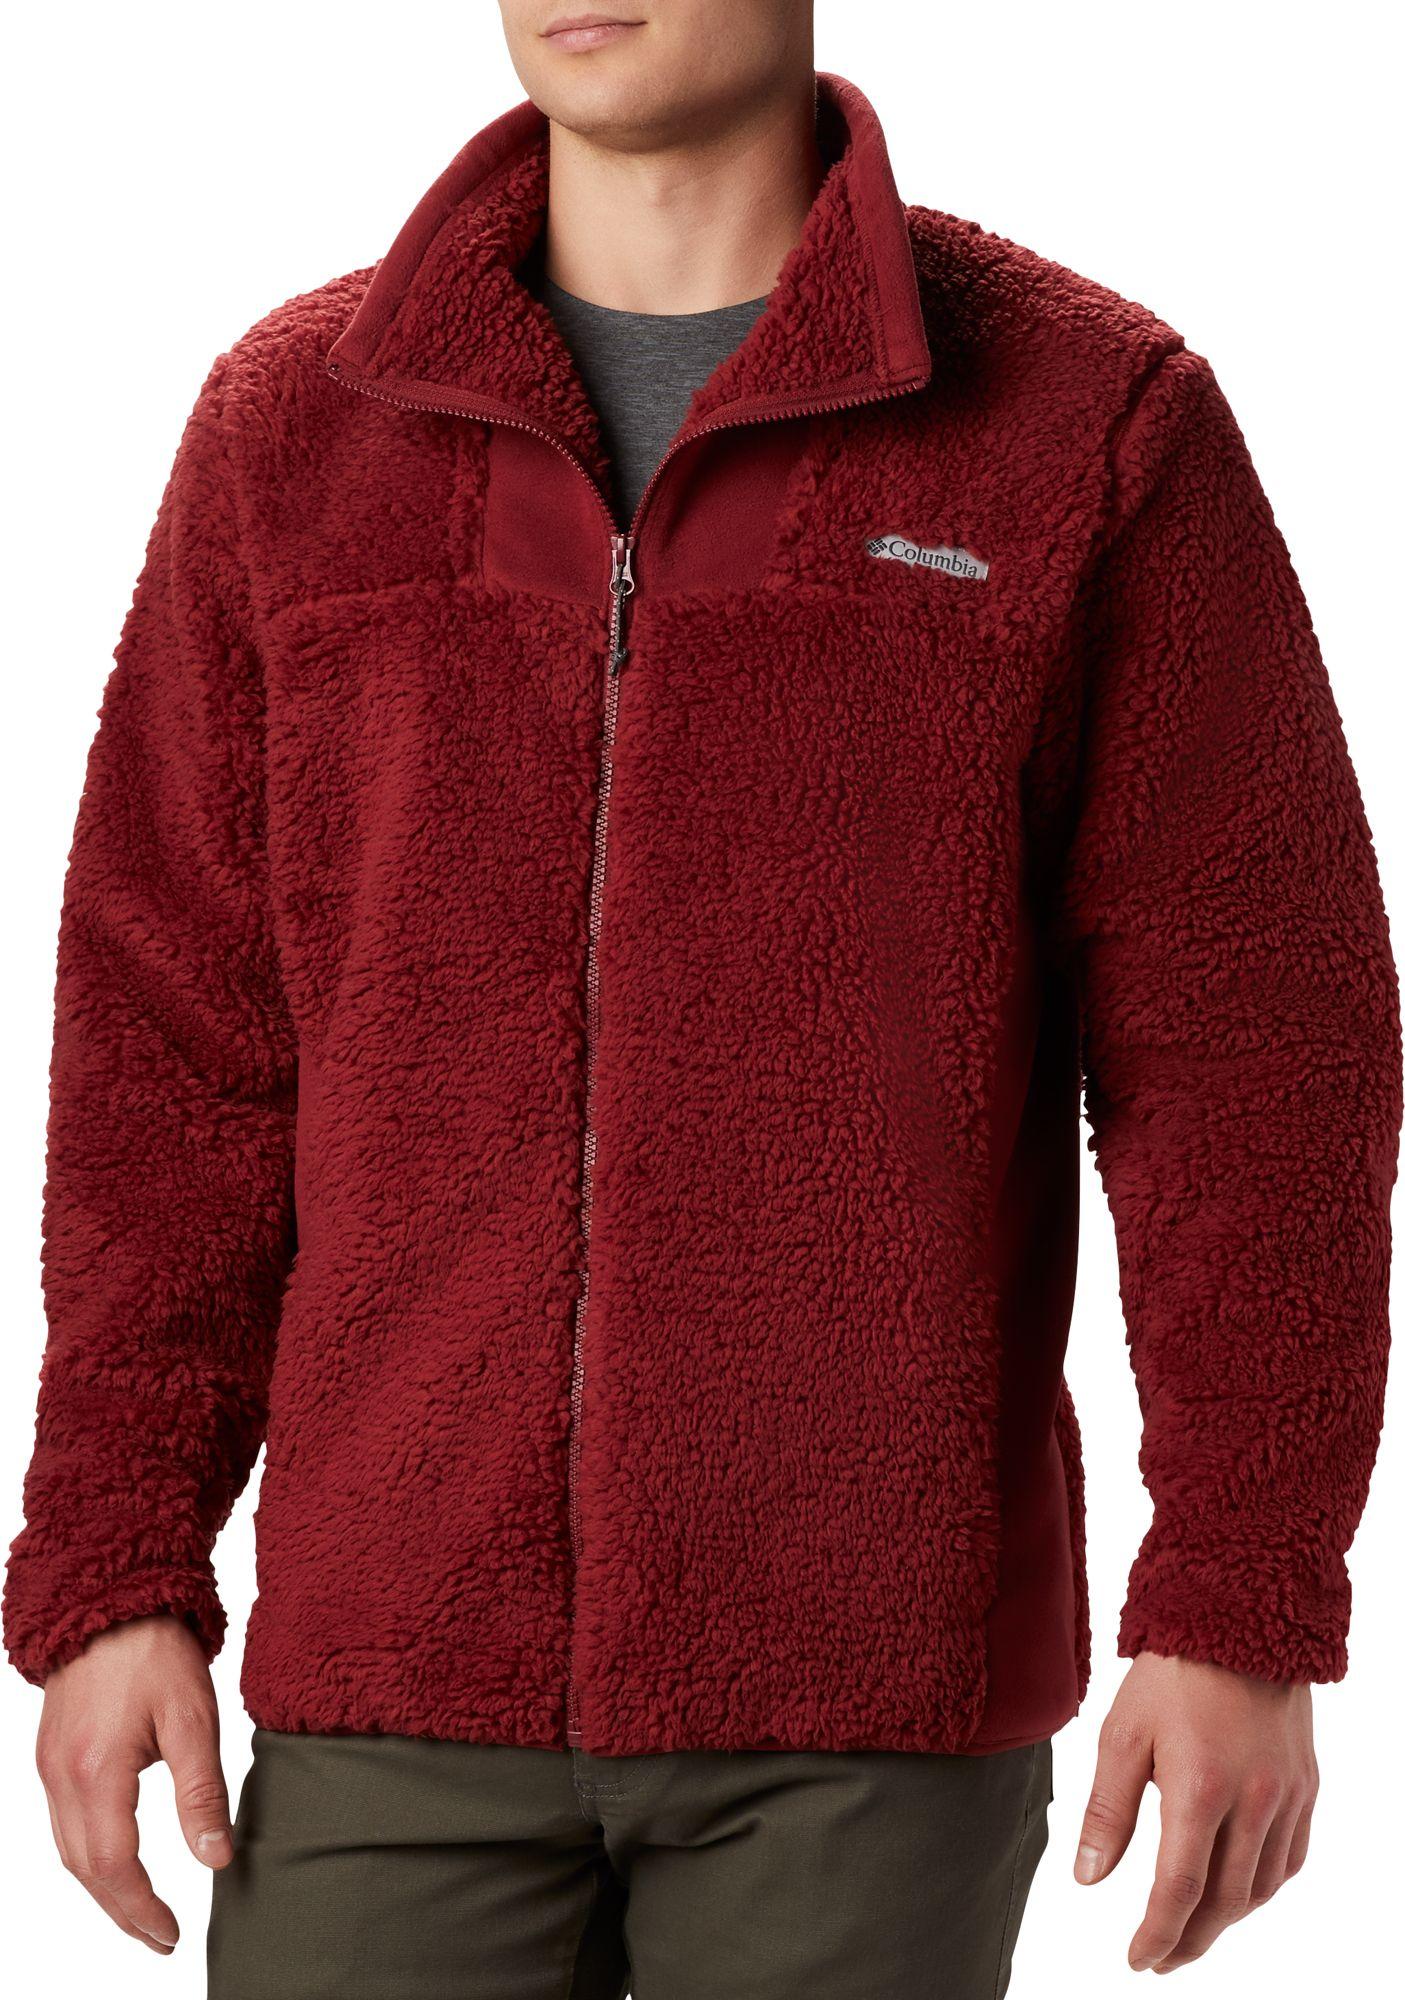 Columbia Winter Pass Fleece Full Zip Jacket in Red for Men - Lyst